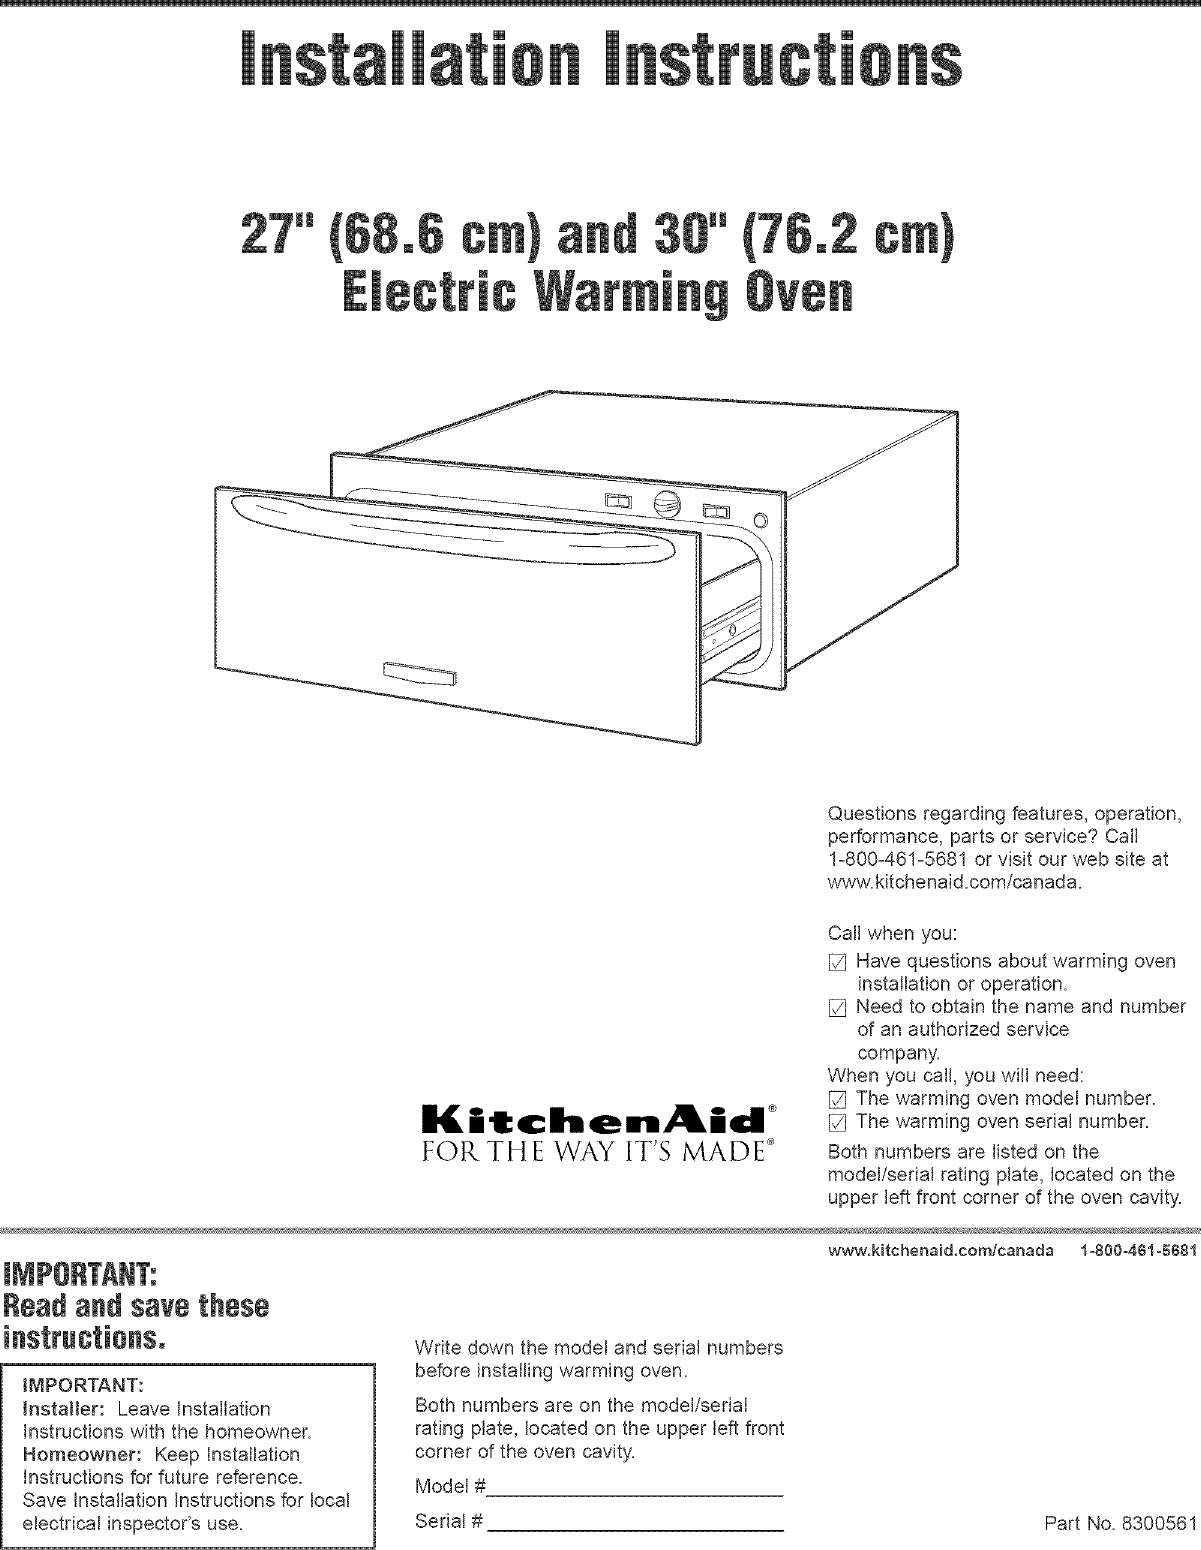 kitchenaid kewd105hbl05 user manual warming drawer manuals and guides l0523331 on kitchenaid warming drawer manual